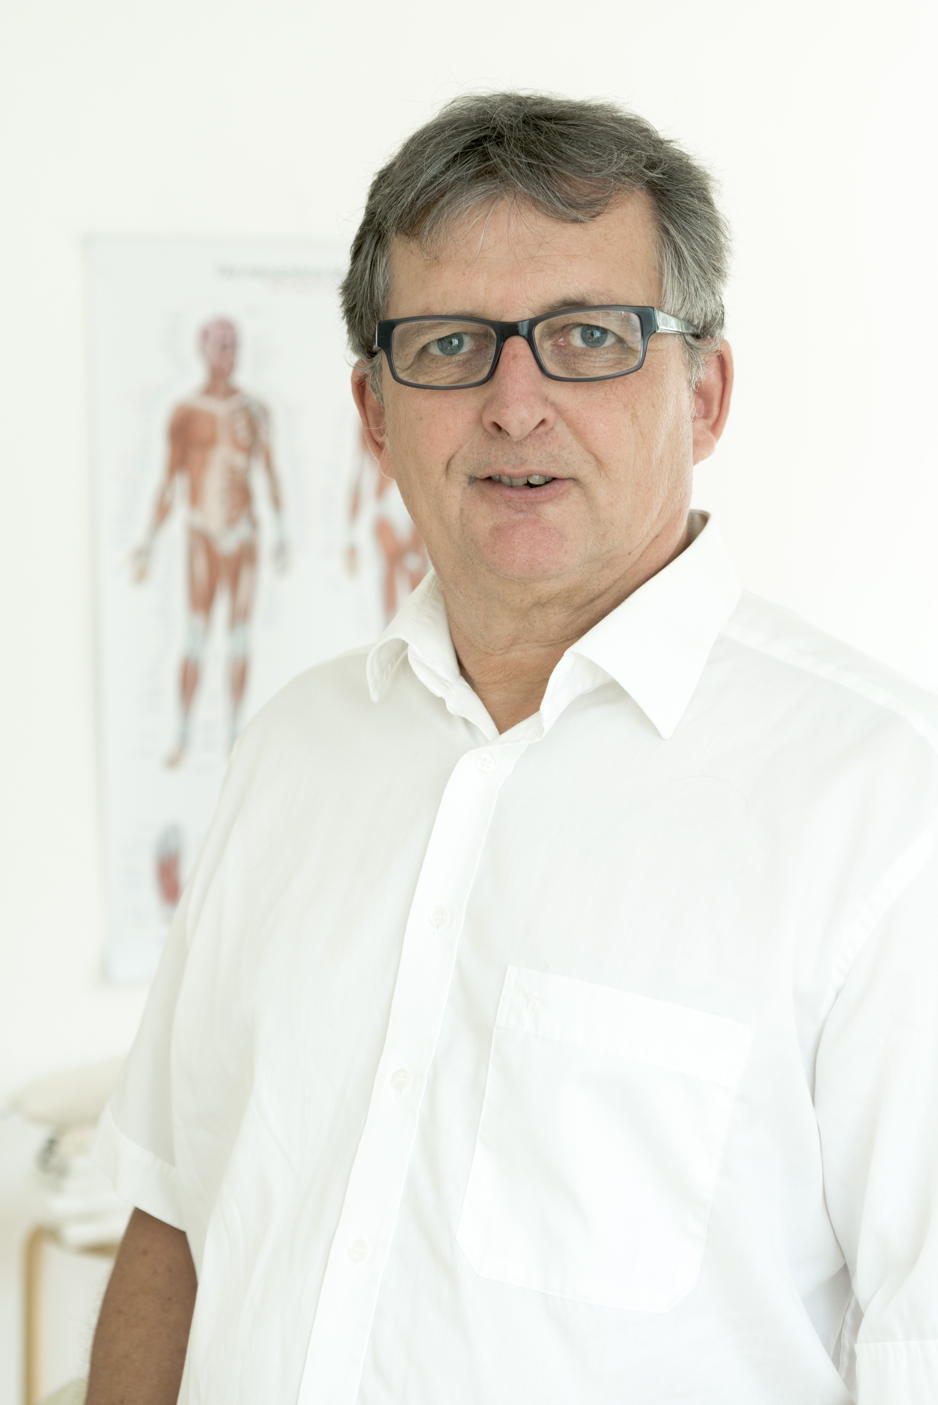 Pohltherapeuten wie Tilo Mörgen haben sich auch auf die Behandlung von Faszien spezialisiert, welche ebenfalls am Entstehen von Brustkorbschmerzen beteiligt sein können. | Praxis Bruckmann